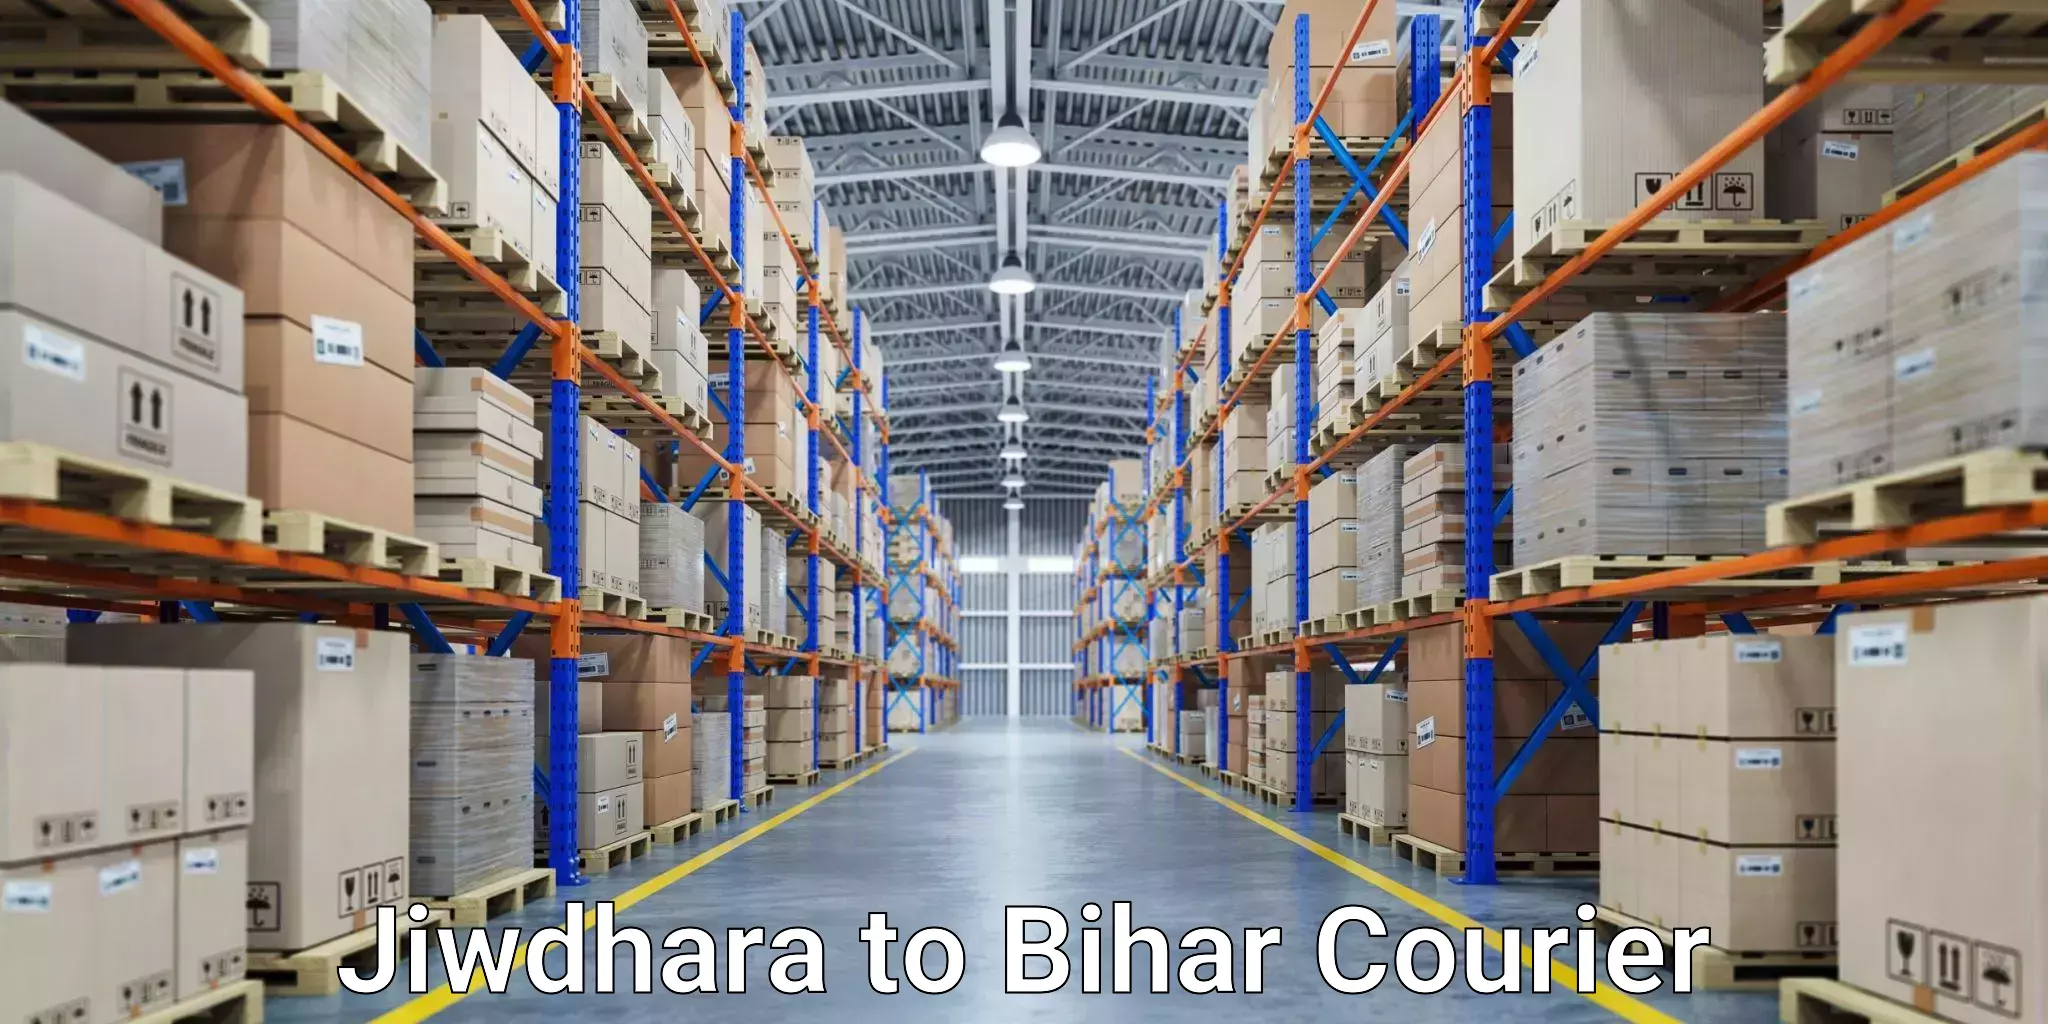 Next-day freight services Jiwdhara to Nalanda